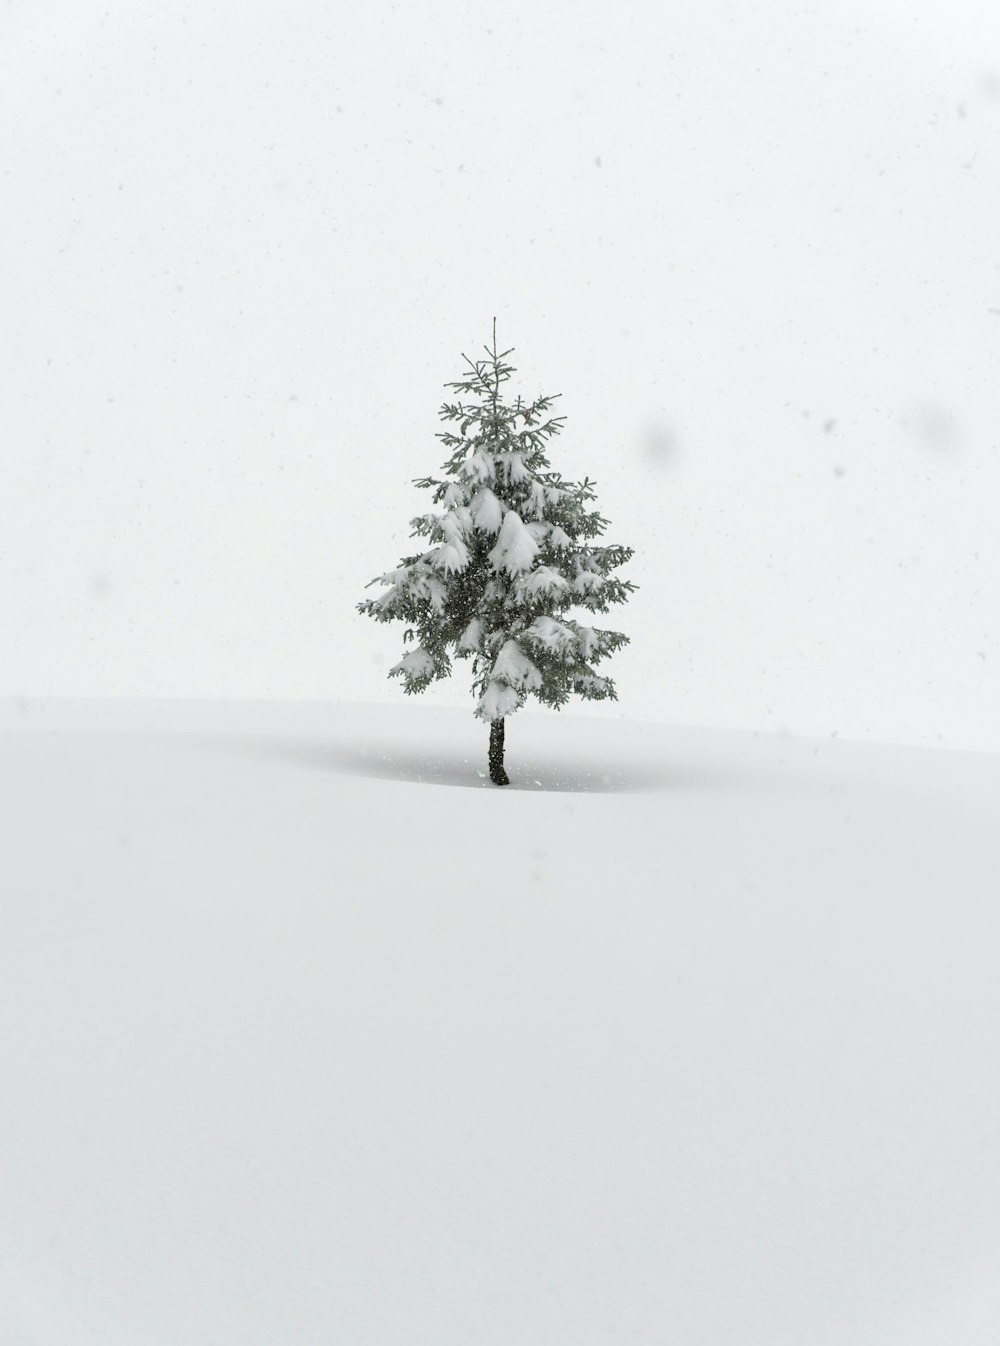 un pin solitaire dans un champ enneigé